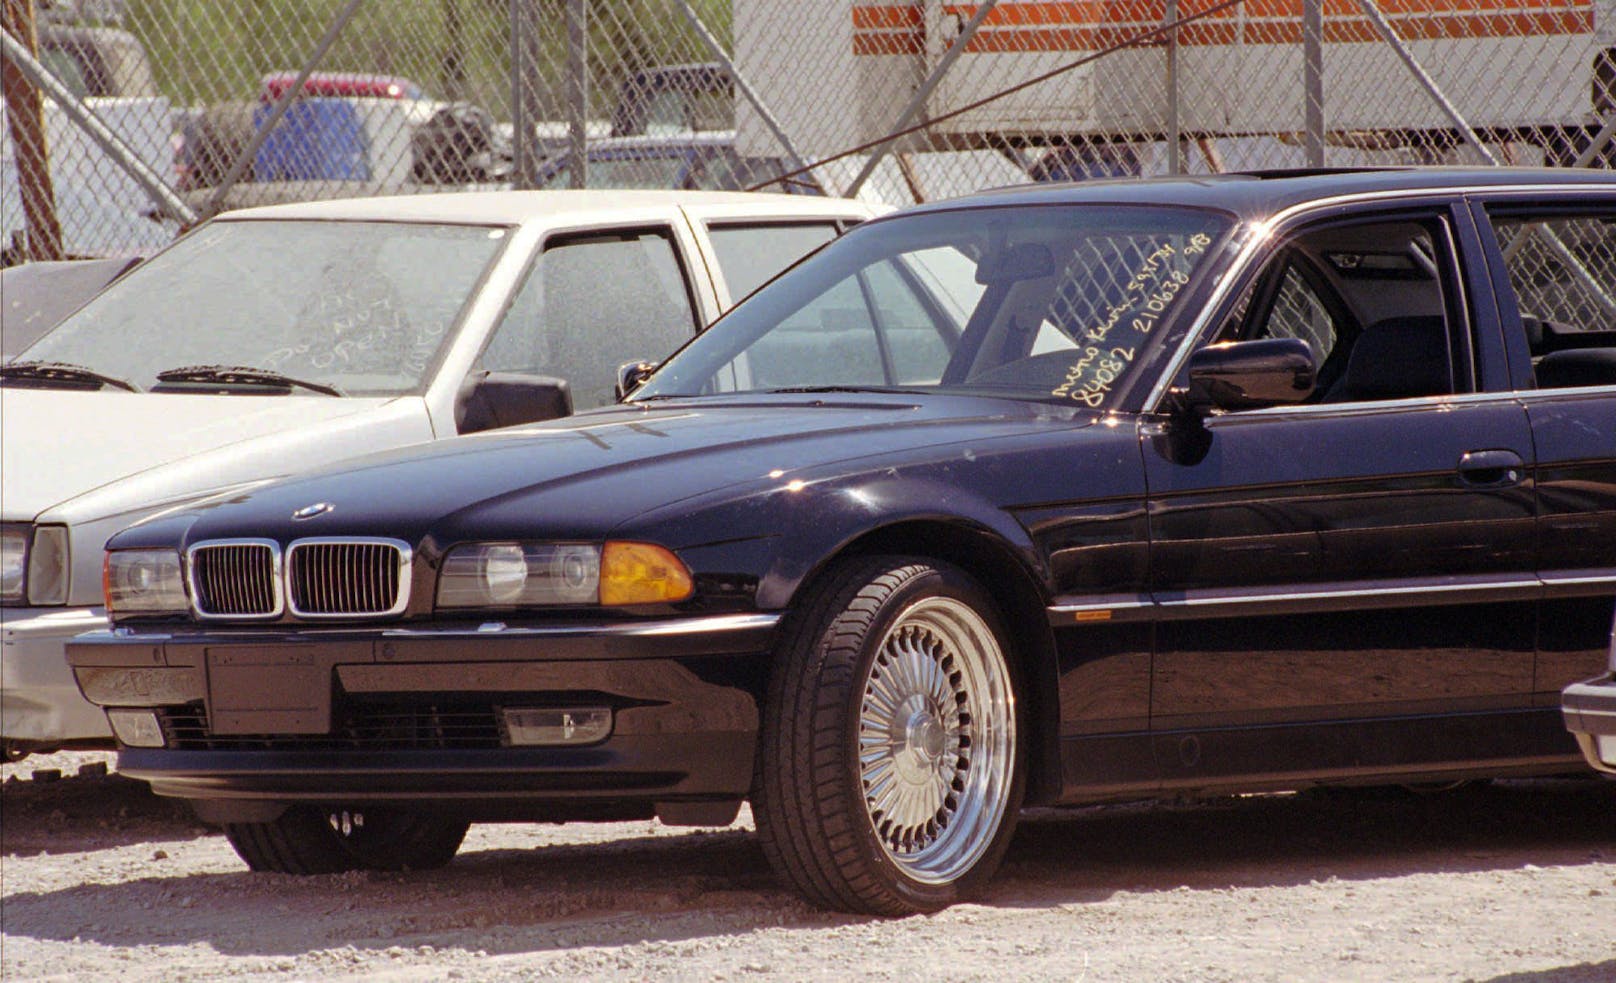 Archivbild des zerschossenen BMWs von Tupac Shakur aufgenommen am 8. September 1996. Der Wagen wurde 2017 von einem kalifornischen Händler für 1,5 Millionen Dollar zum Verkauf angeboten.